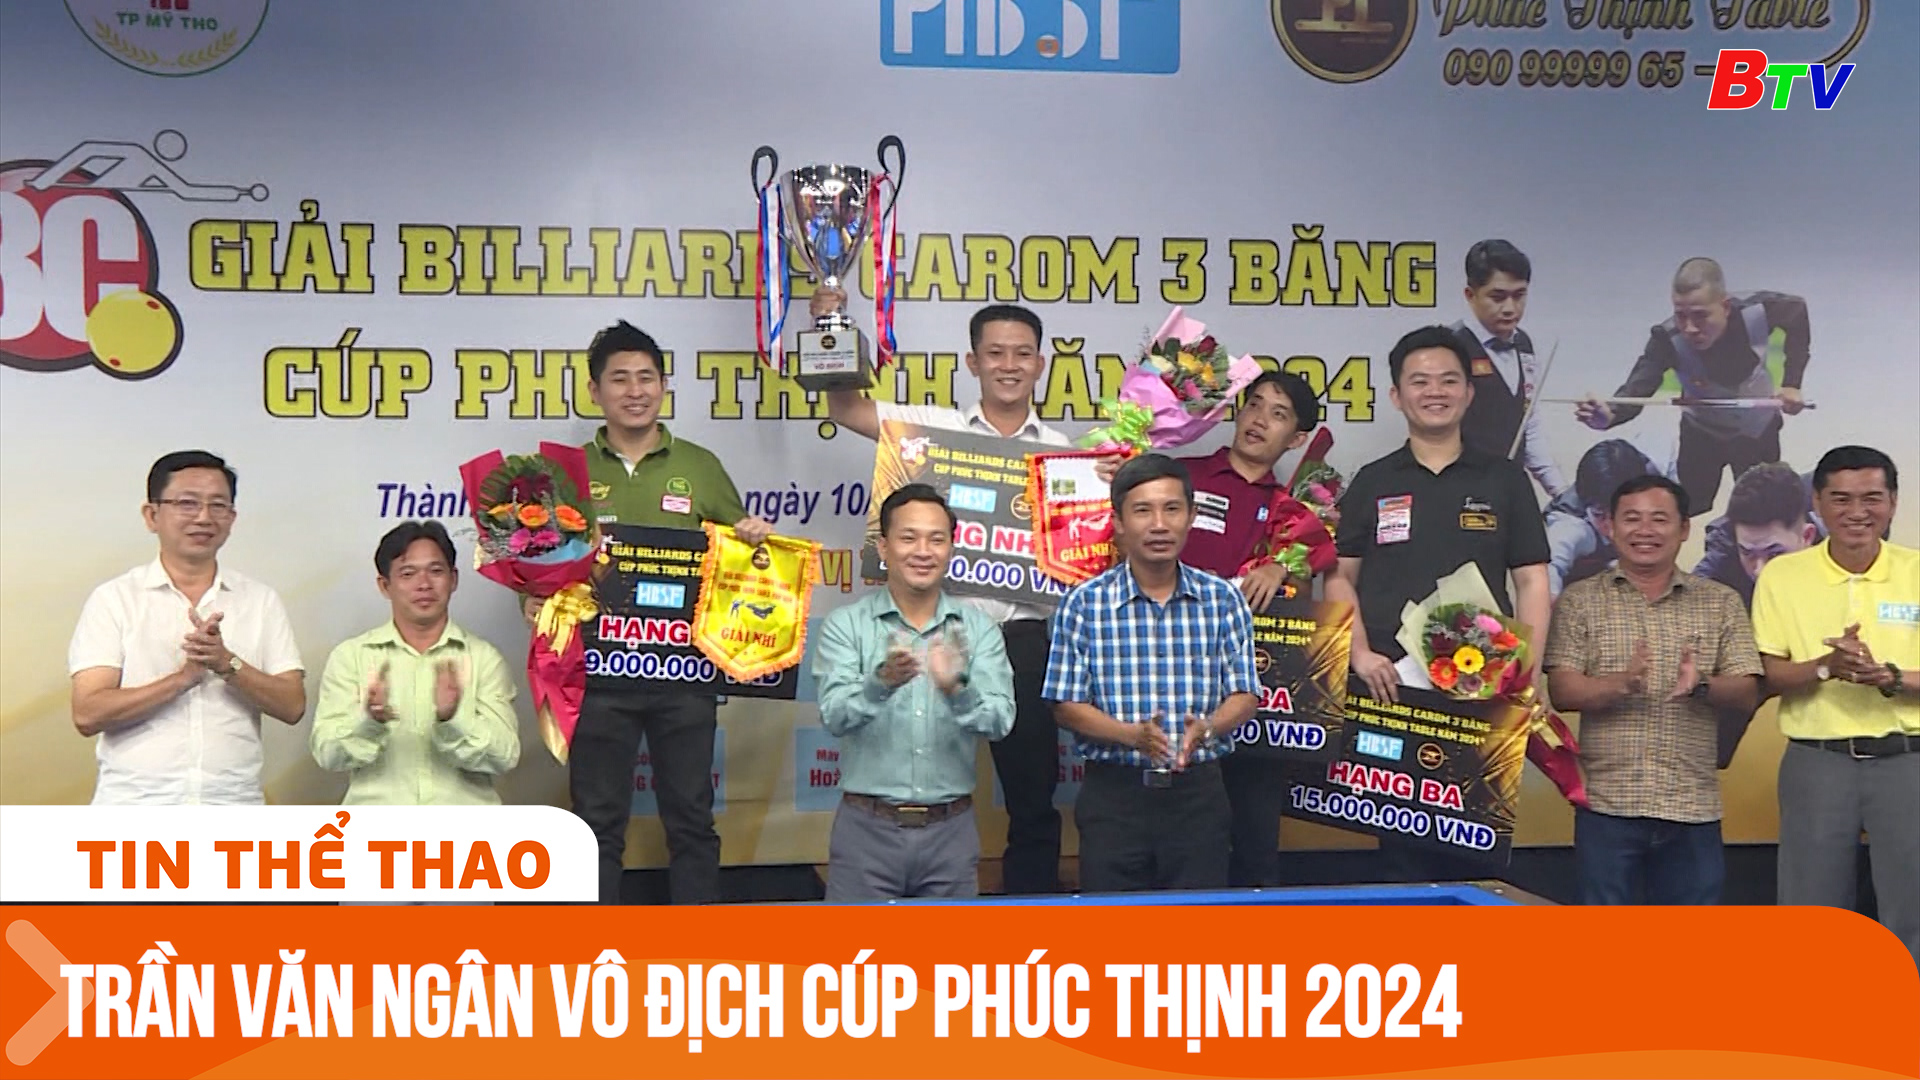 Tay cơ Trần Văn Ngân vô địch Giải Billiard Carom 3 băng Cúp Phúc Thịnh lần 1 - 2024 | Tin Thể thao 24h	